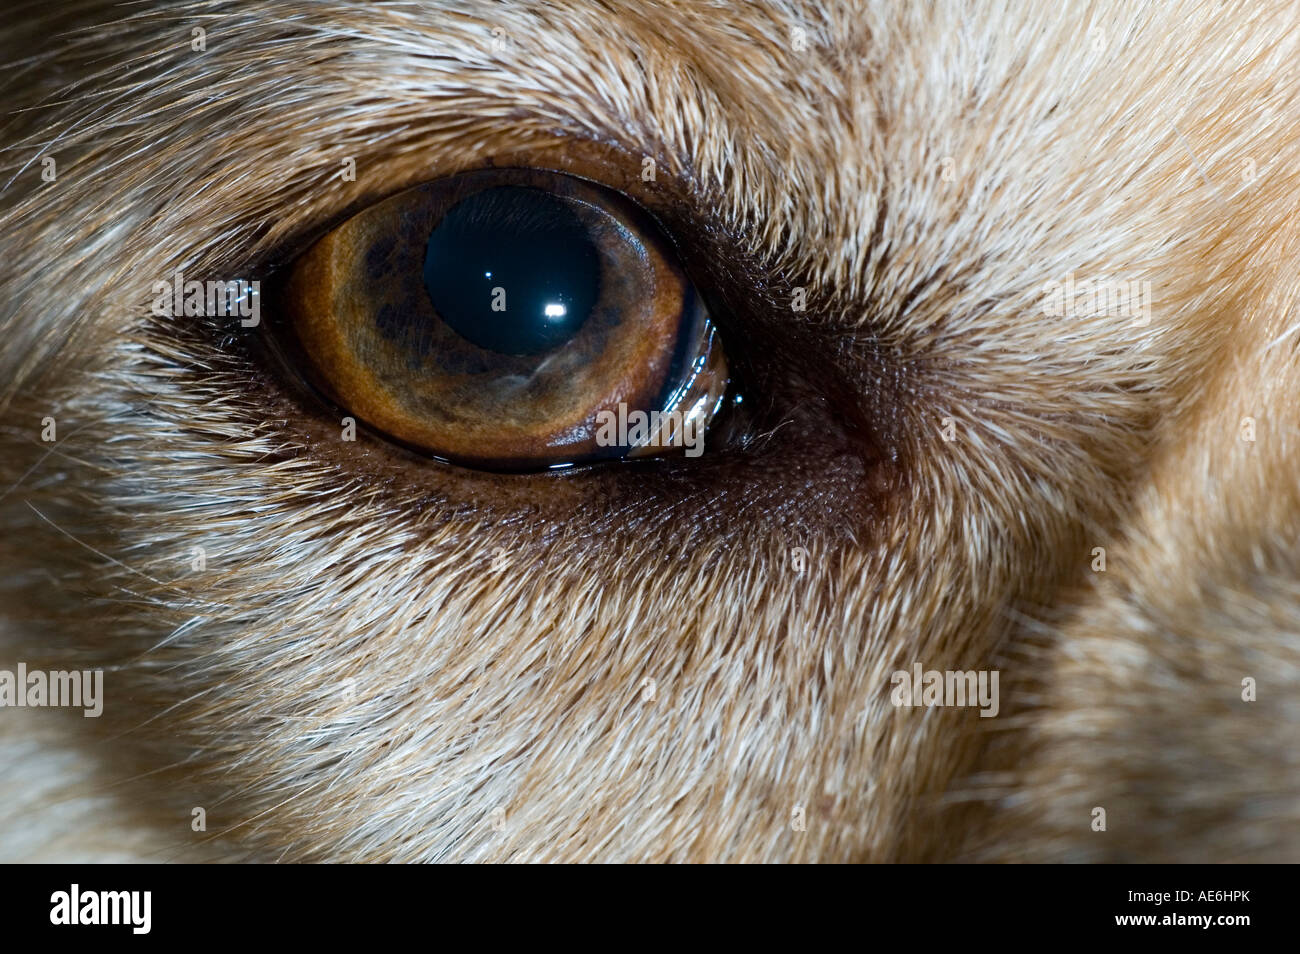 Eye of a golden labrador dog Stock Photo